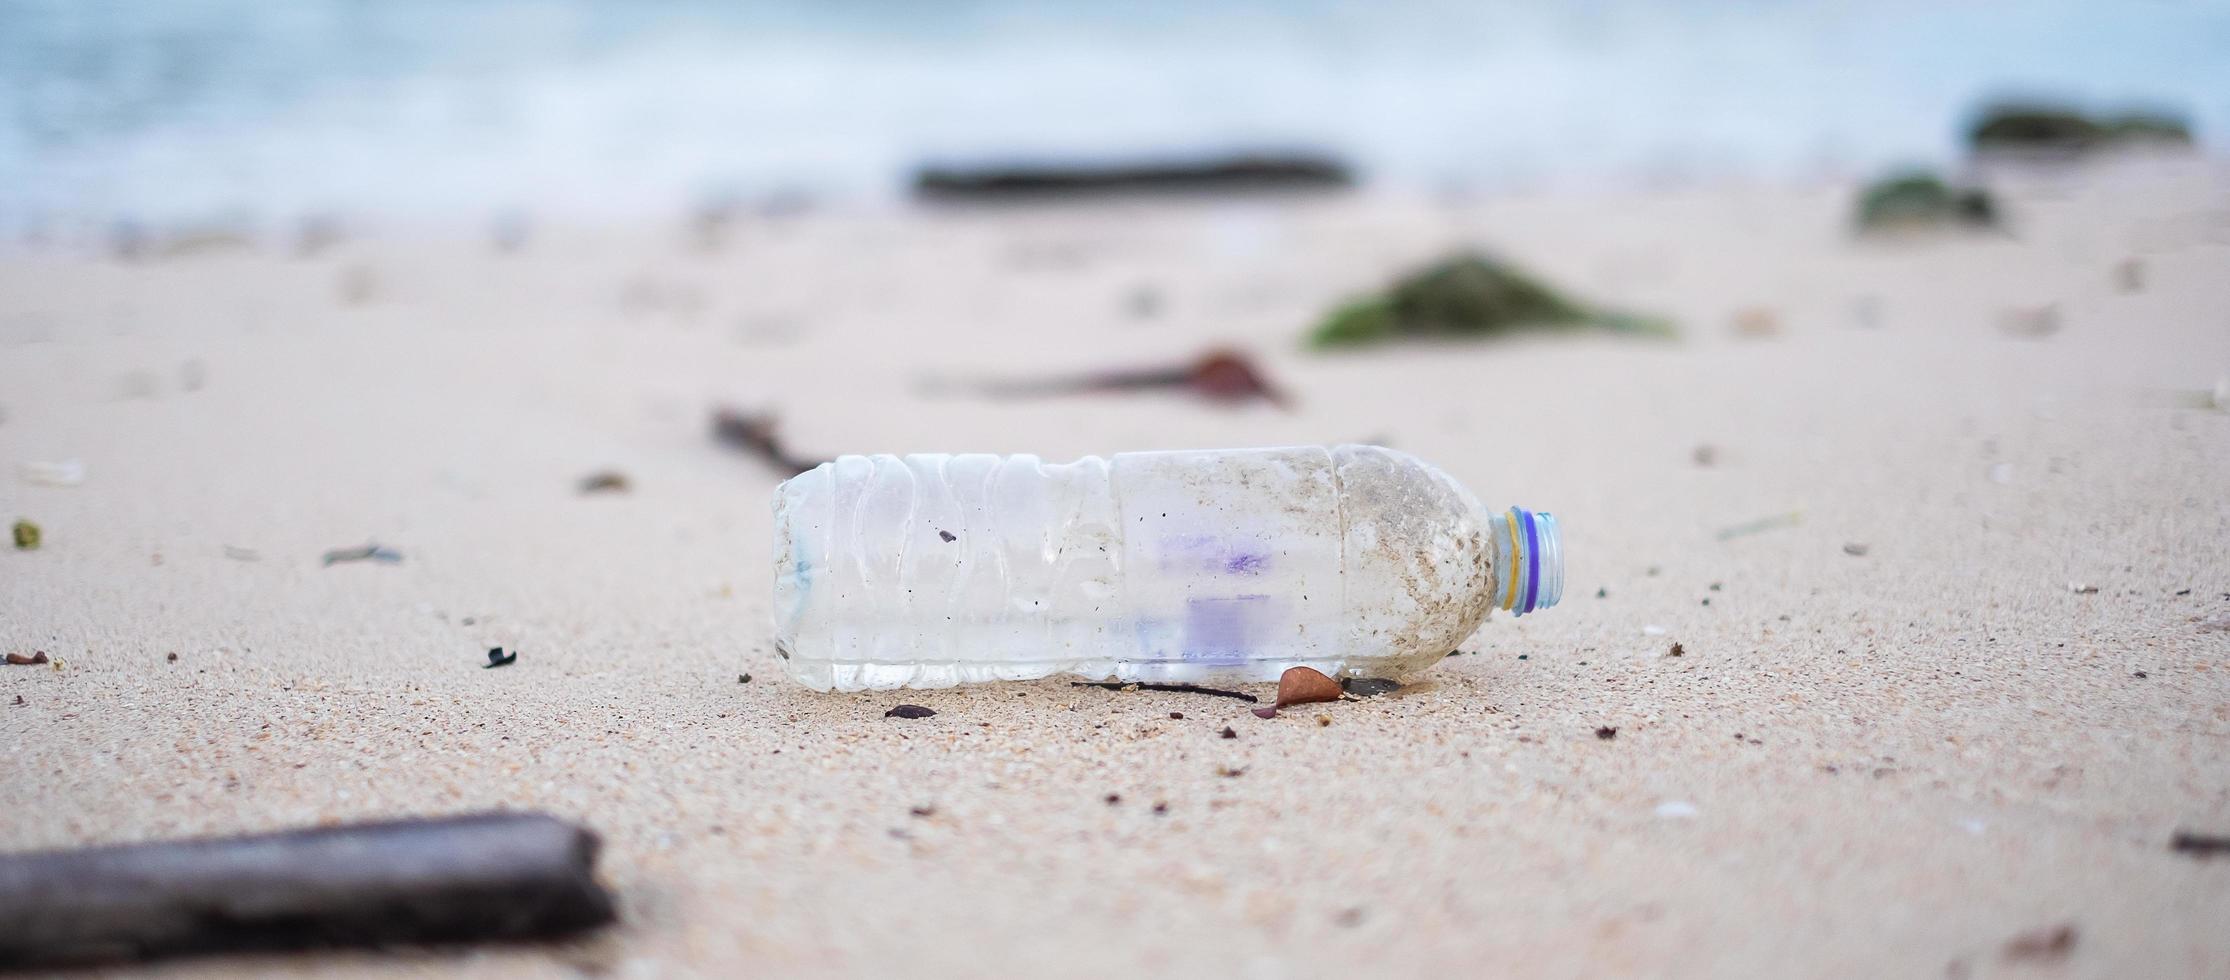 Plastikflaschenmüll am Strand. Ökologie, Umwelt, Umweltverschmutzung und ökologisches Problemkonzept foto